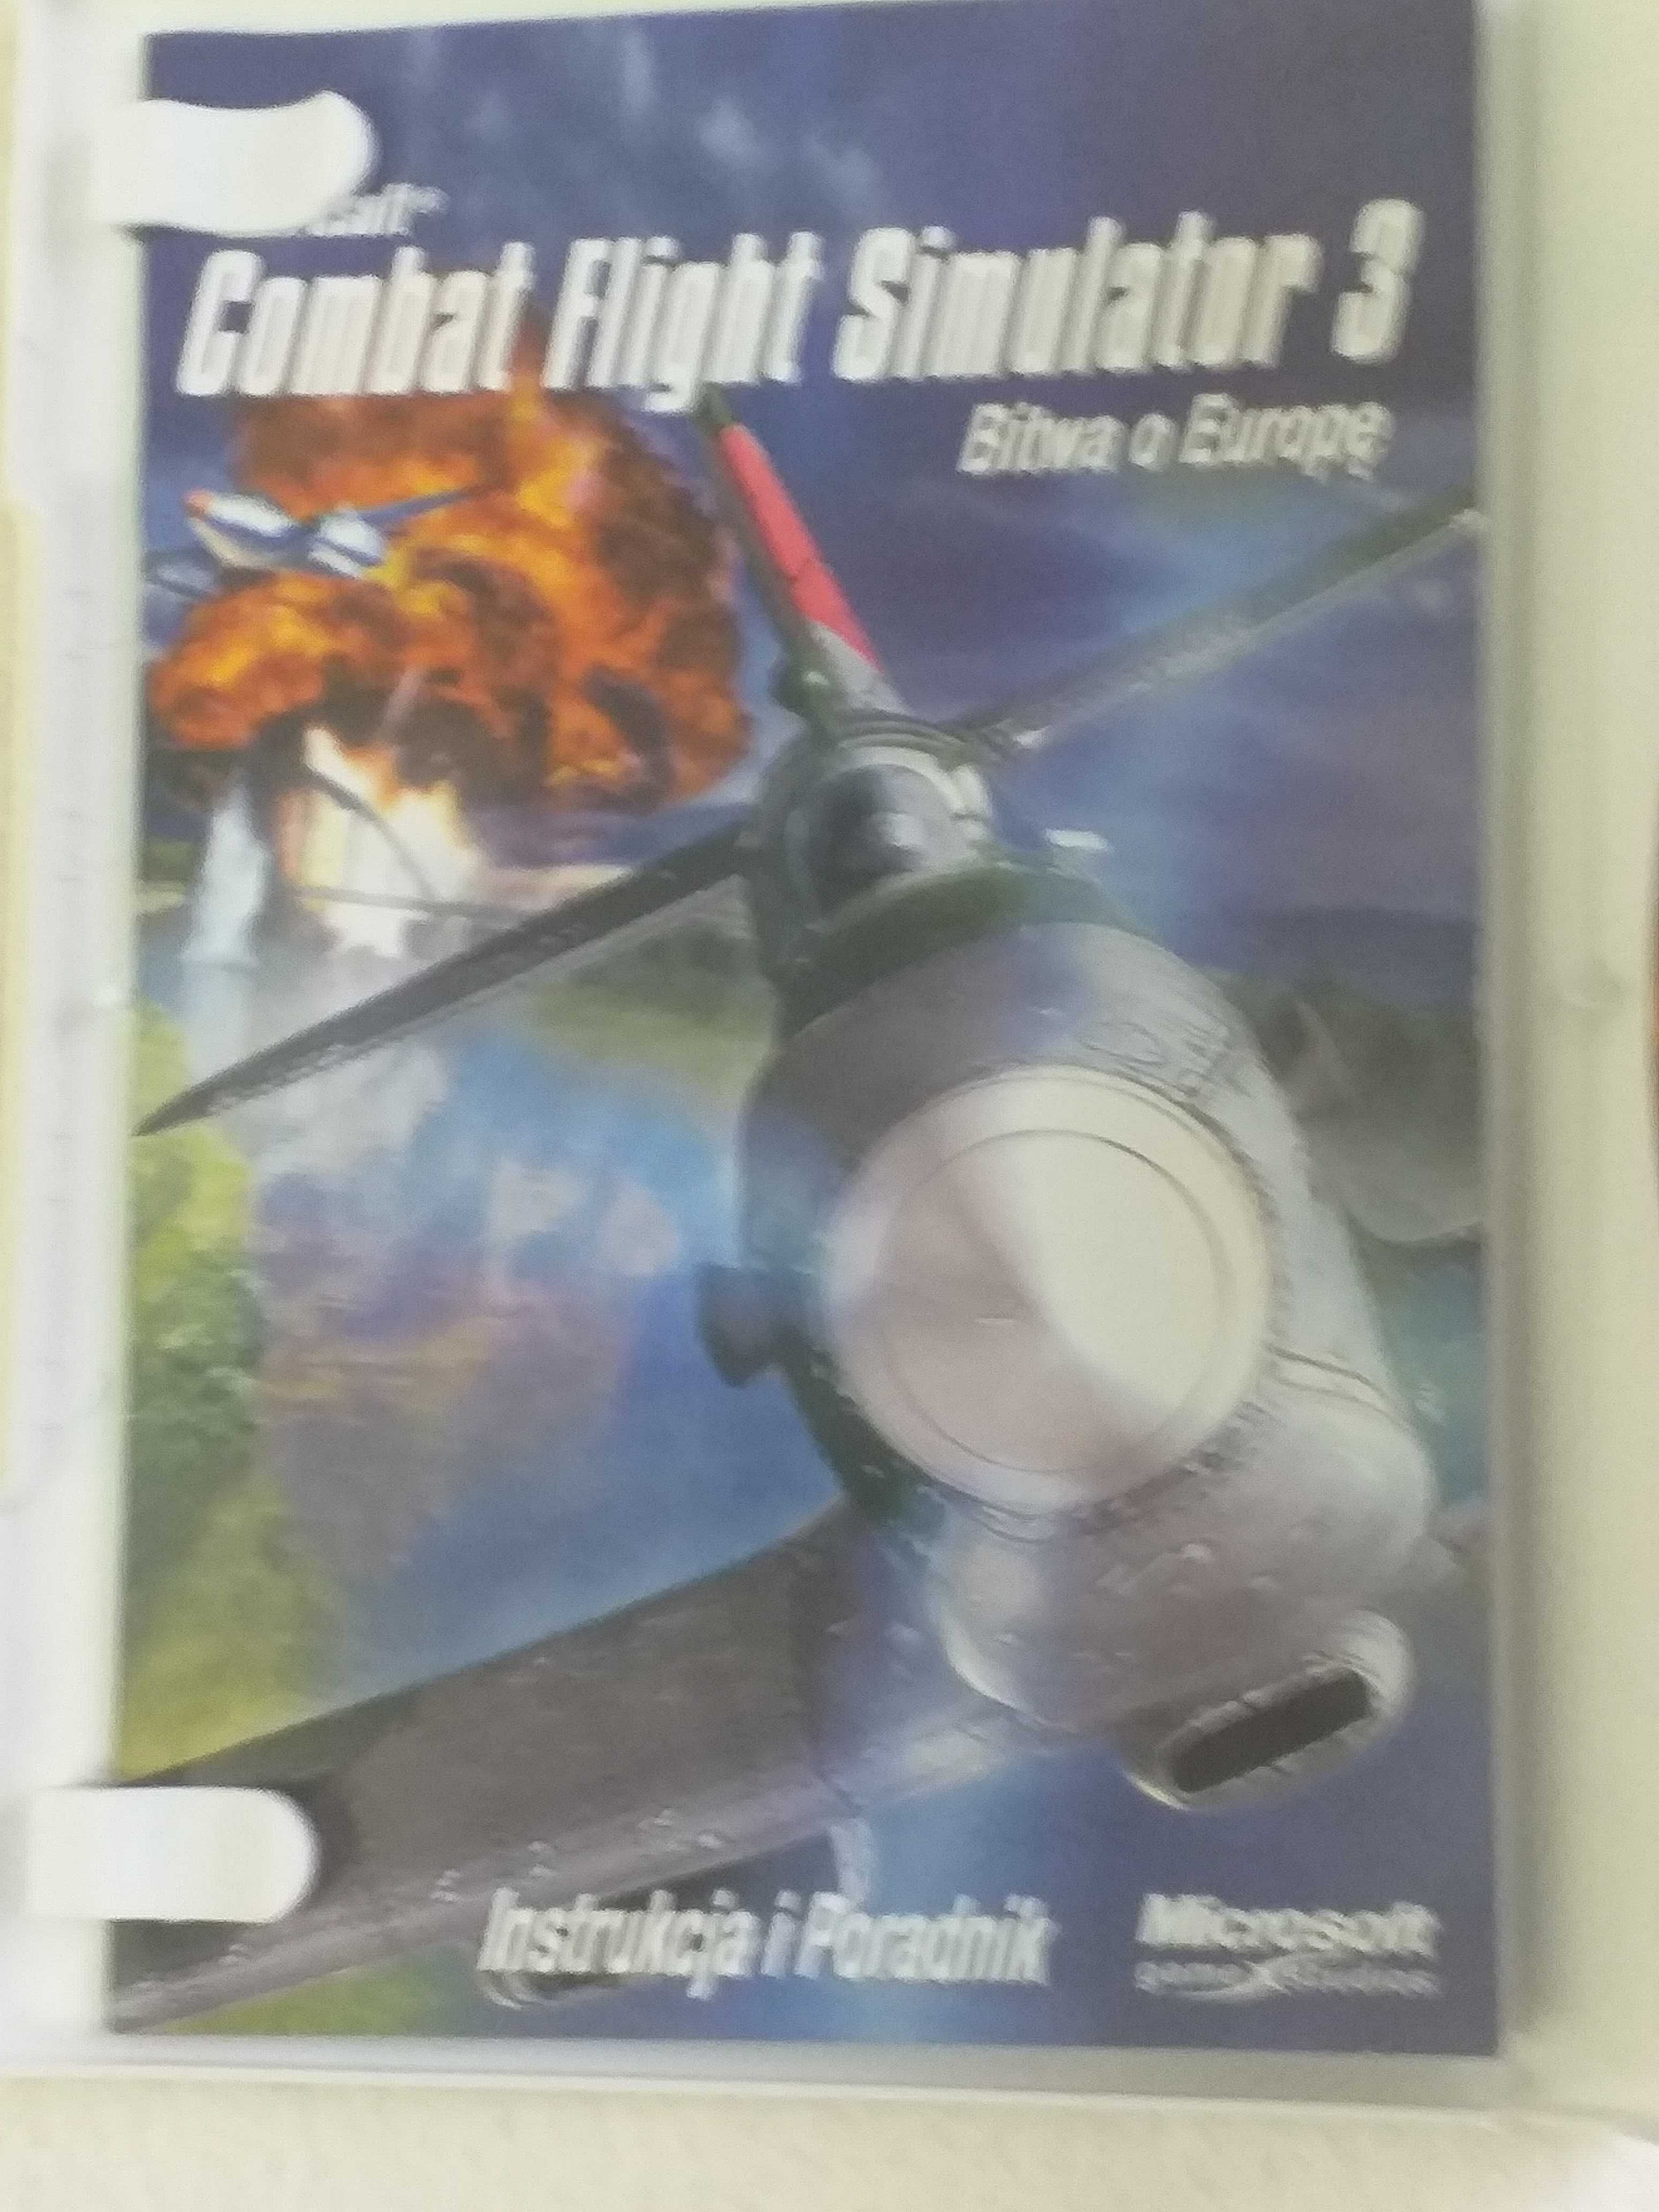 Gra komputerowa - Combat Flight Simulator 3 Bitwa o Europe